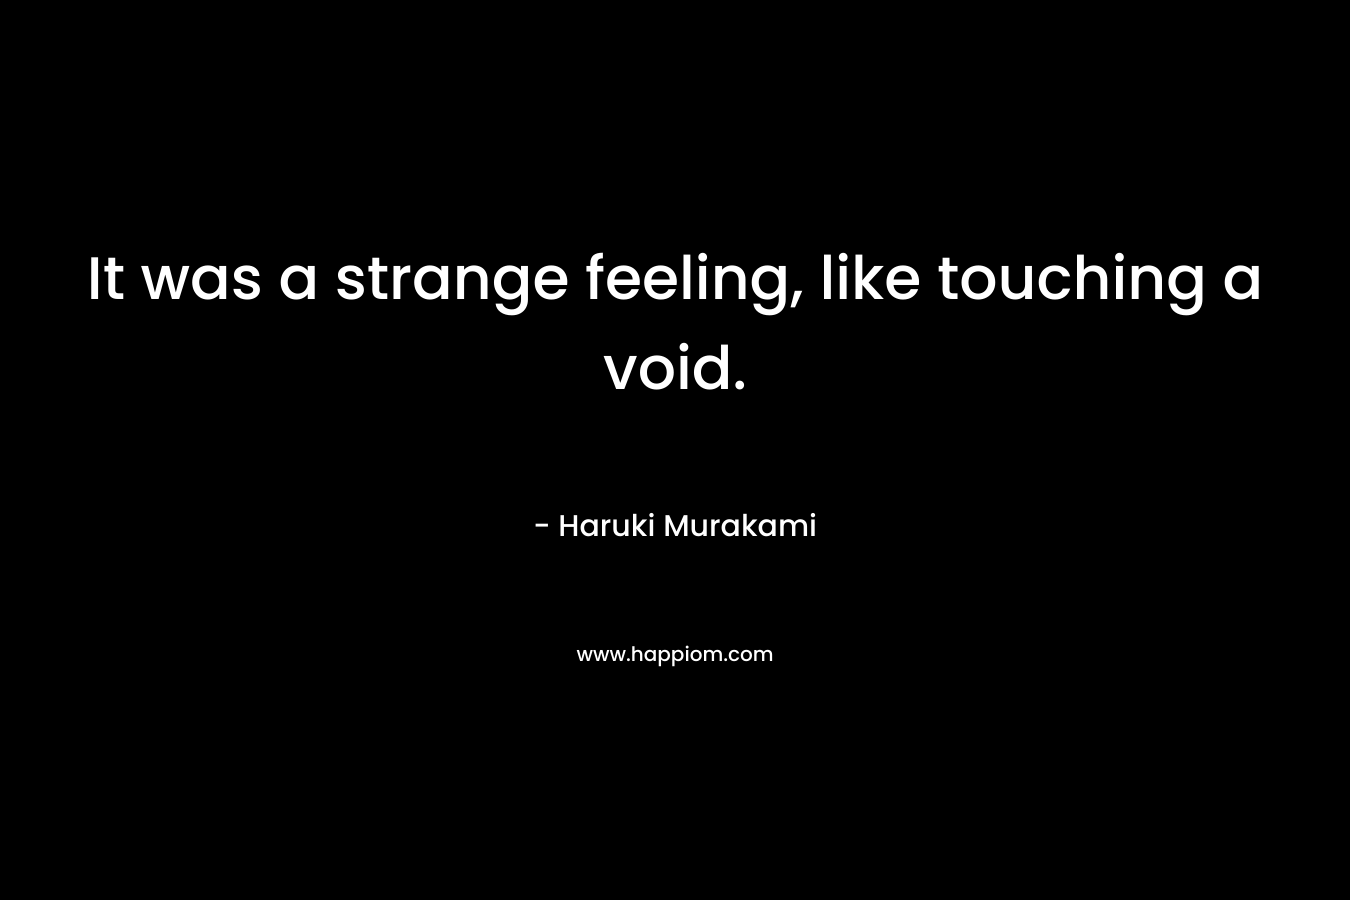 It was a strange feeling, like touching a void.